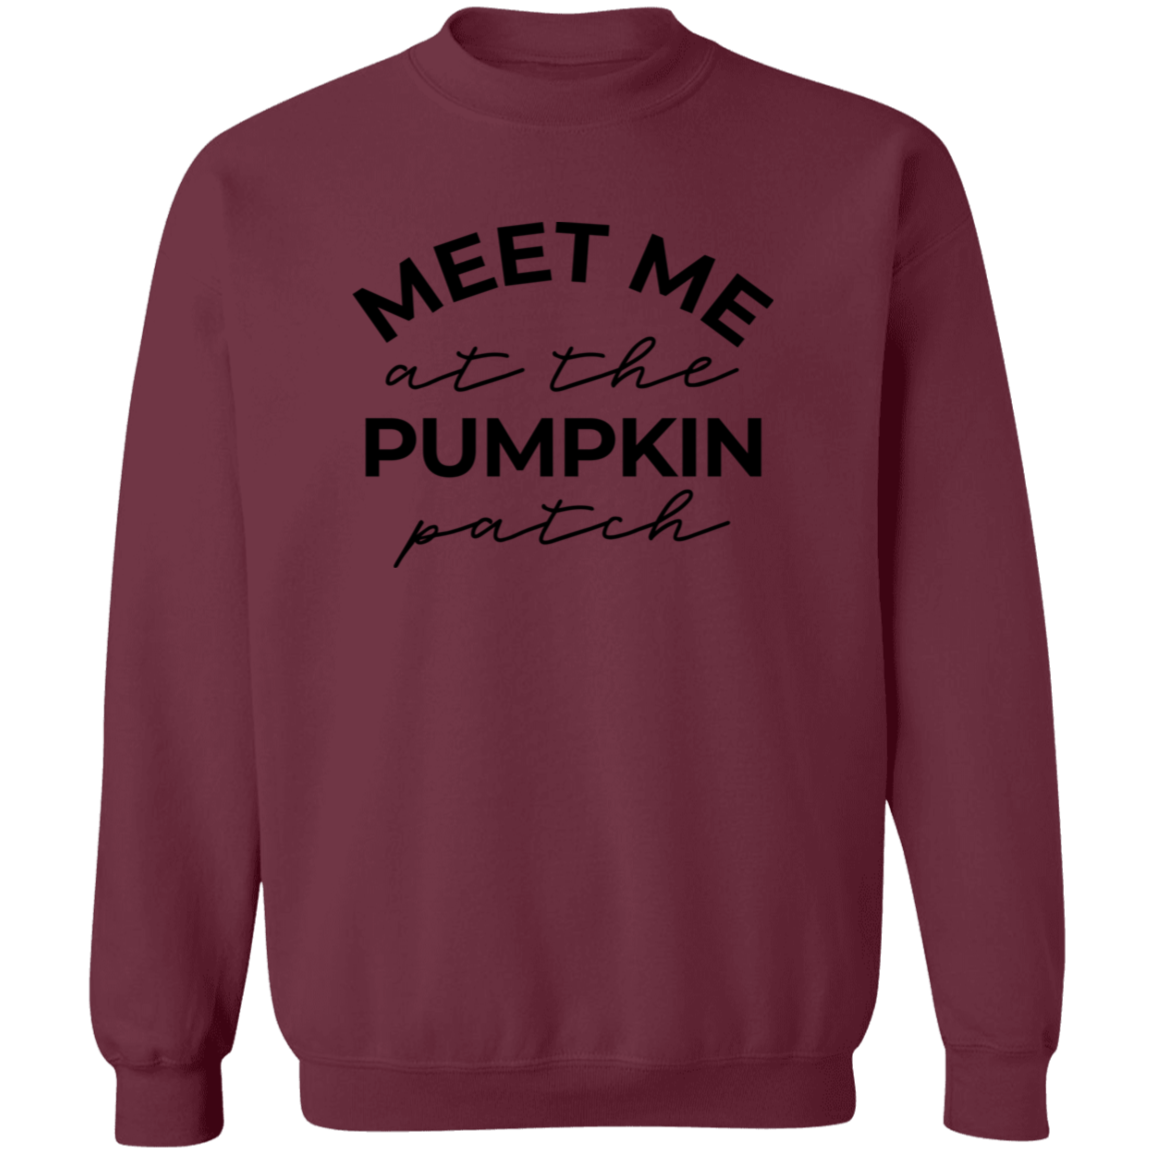 Meet Me At The Pumpkin Patch Sweatshirt